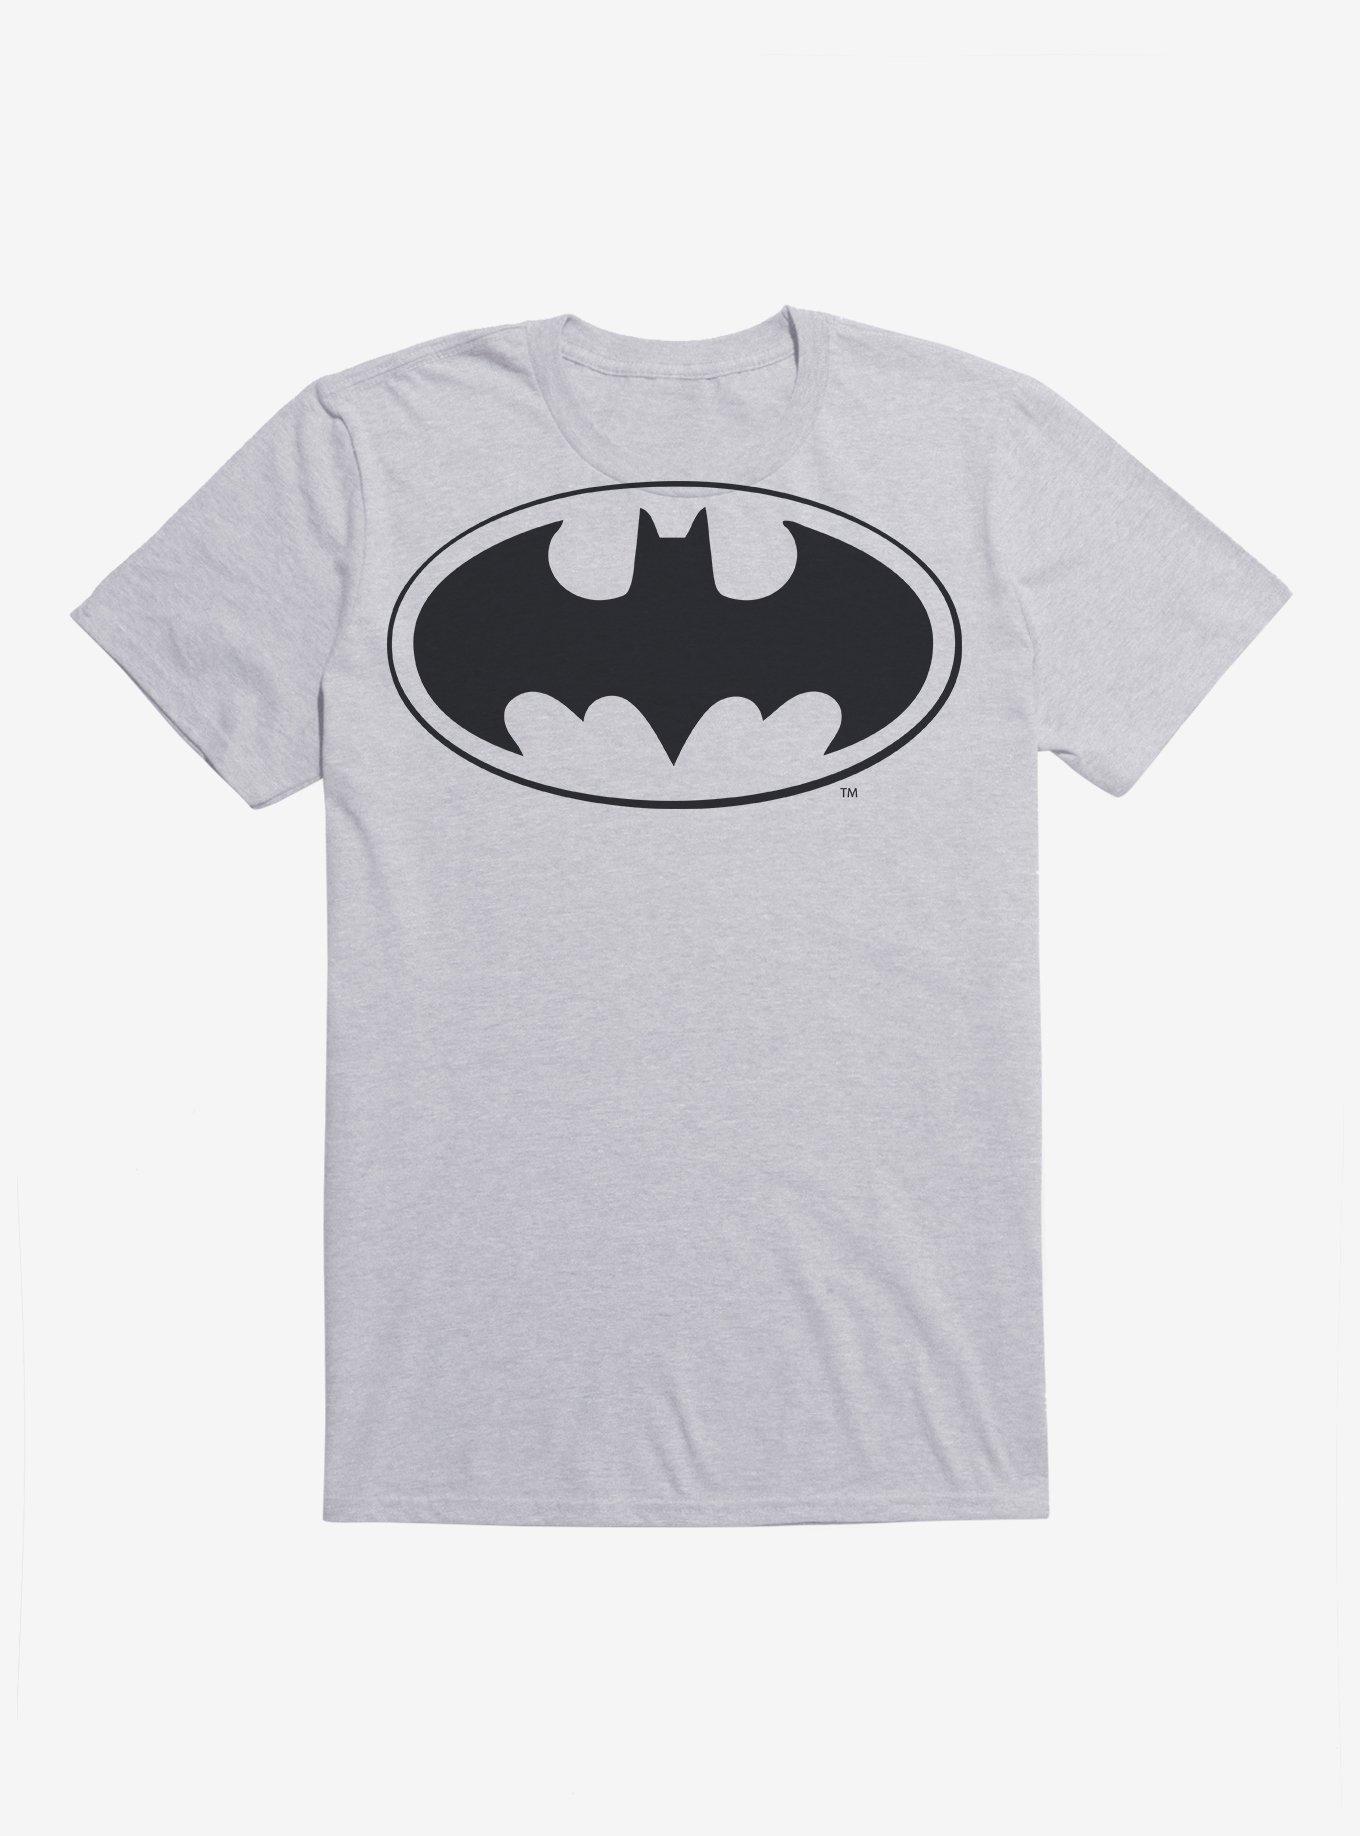 DC Comics Batman Bat Logo Black T-Shirt, HEATHER GREY, hi-res